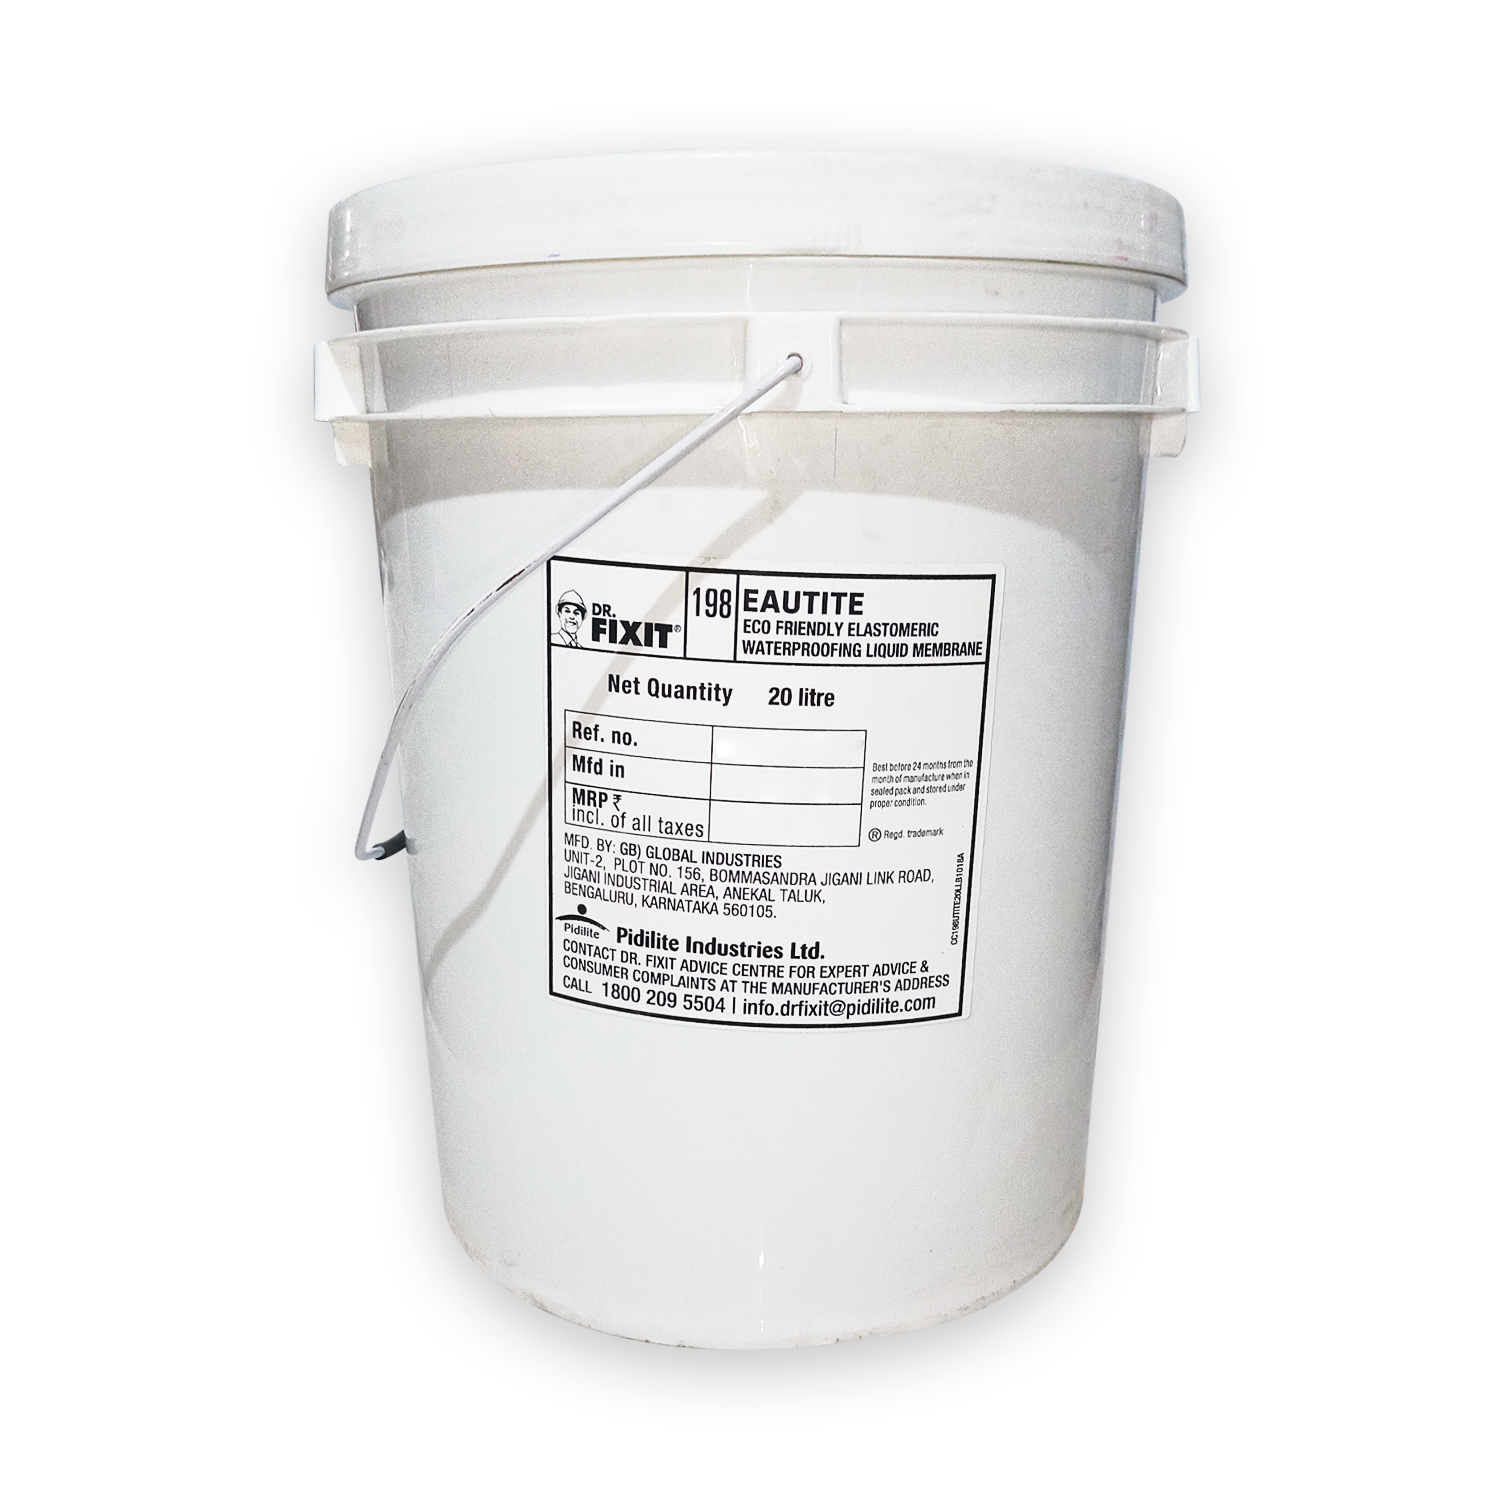 Dr. Fixit 198 Eautite 20 Kg Waterproof Chemicals